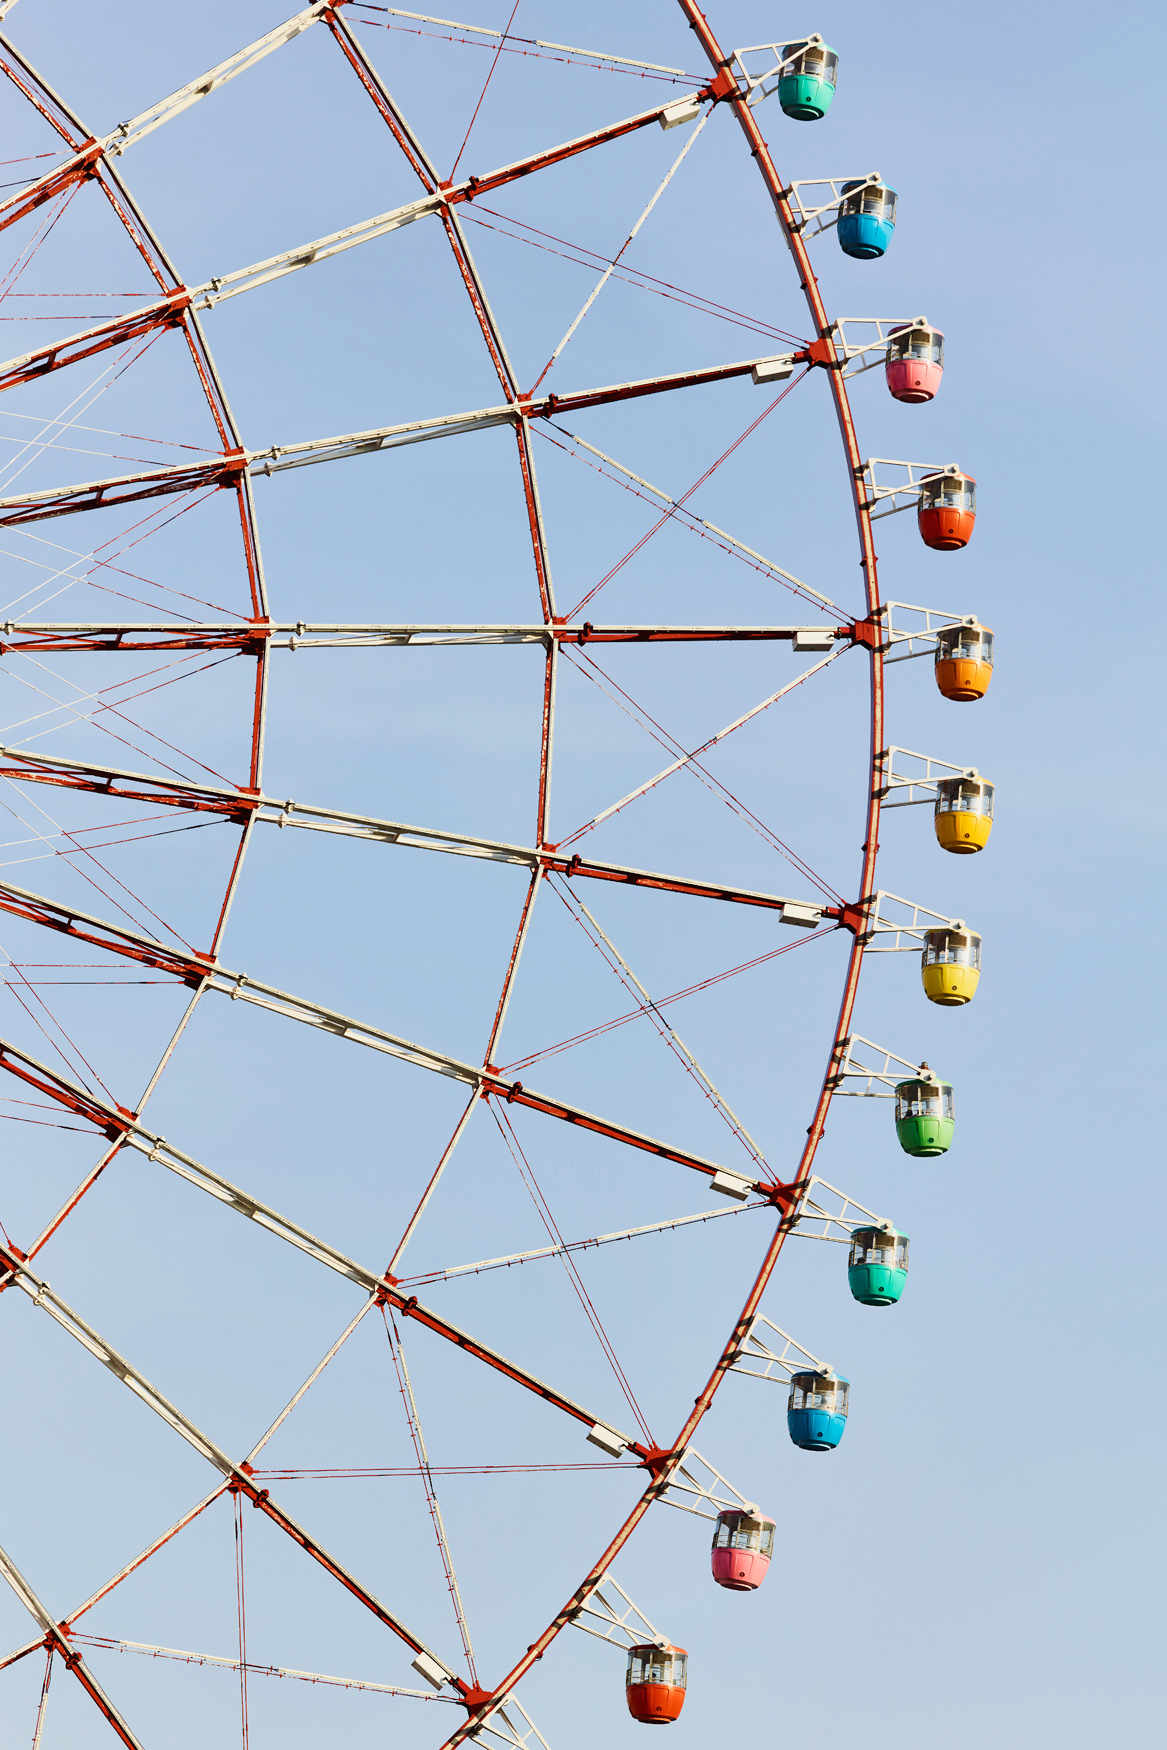 "Daikanransha Ferris Wheel"